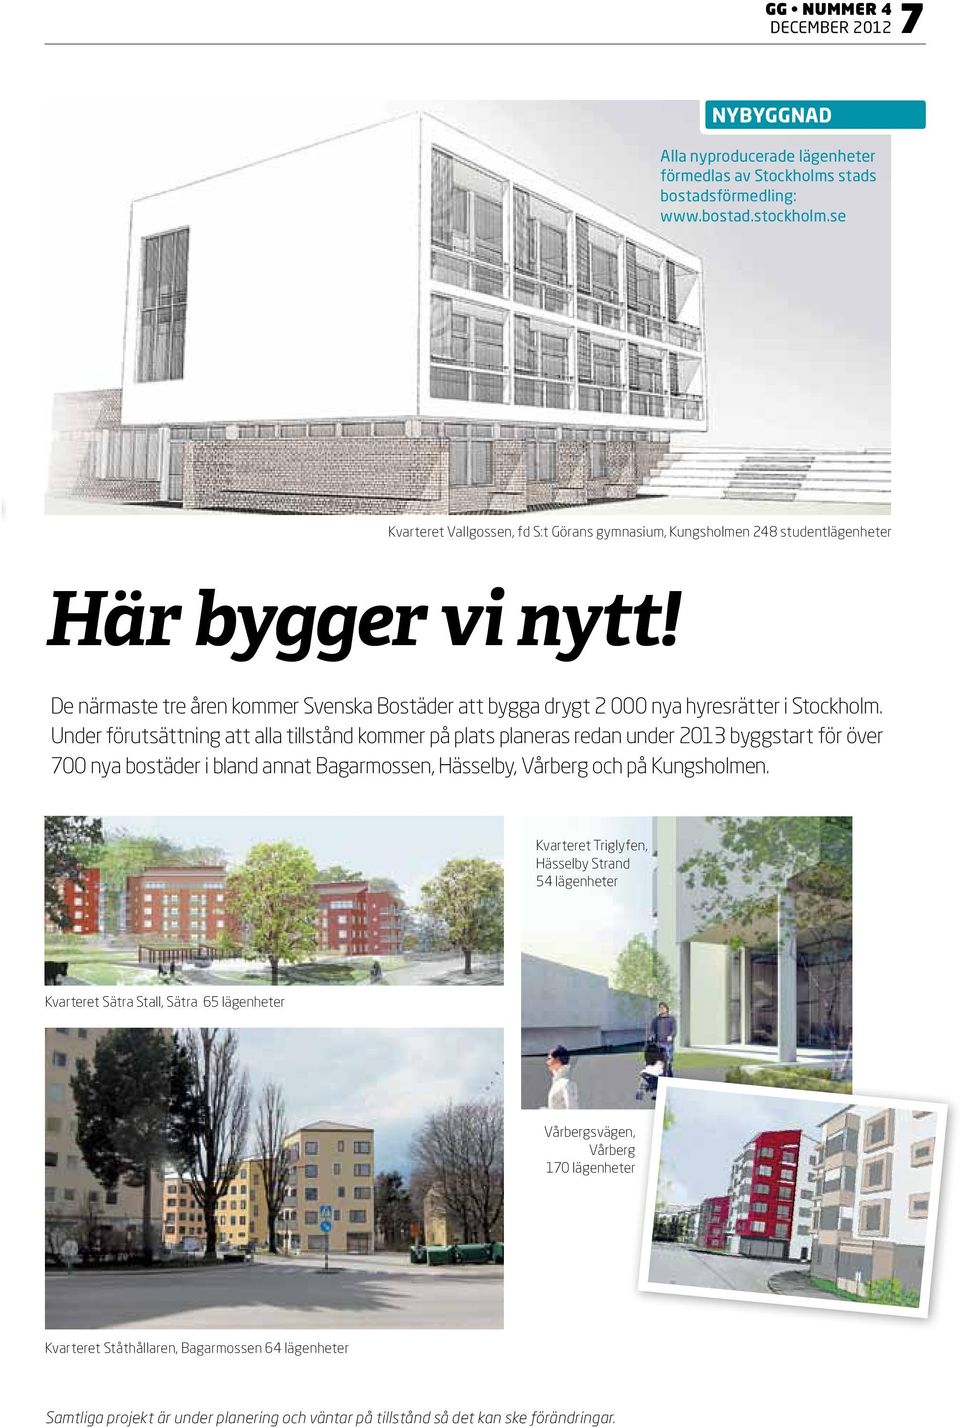 De närmaste tre åren kommer Svenska Bostäder att bygga drygt 2 000 nya hyresrätter i Stockholm.